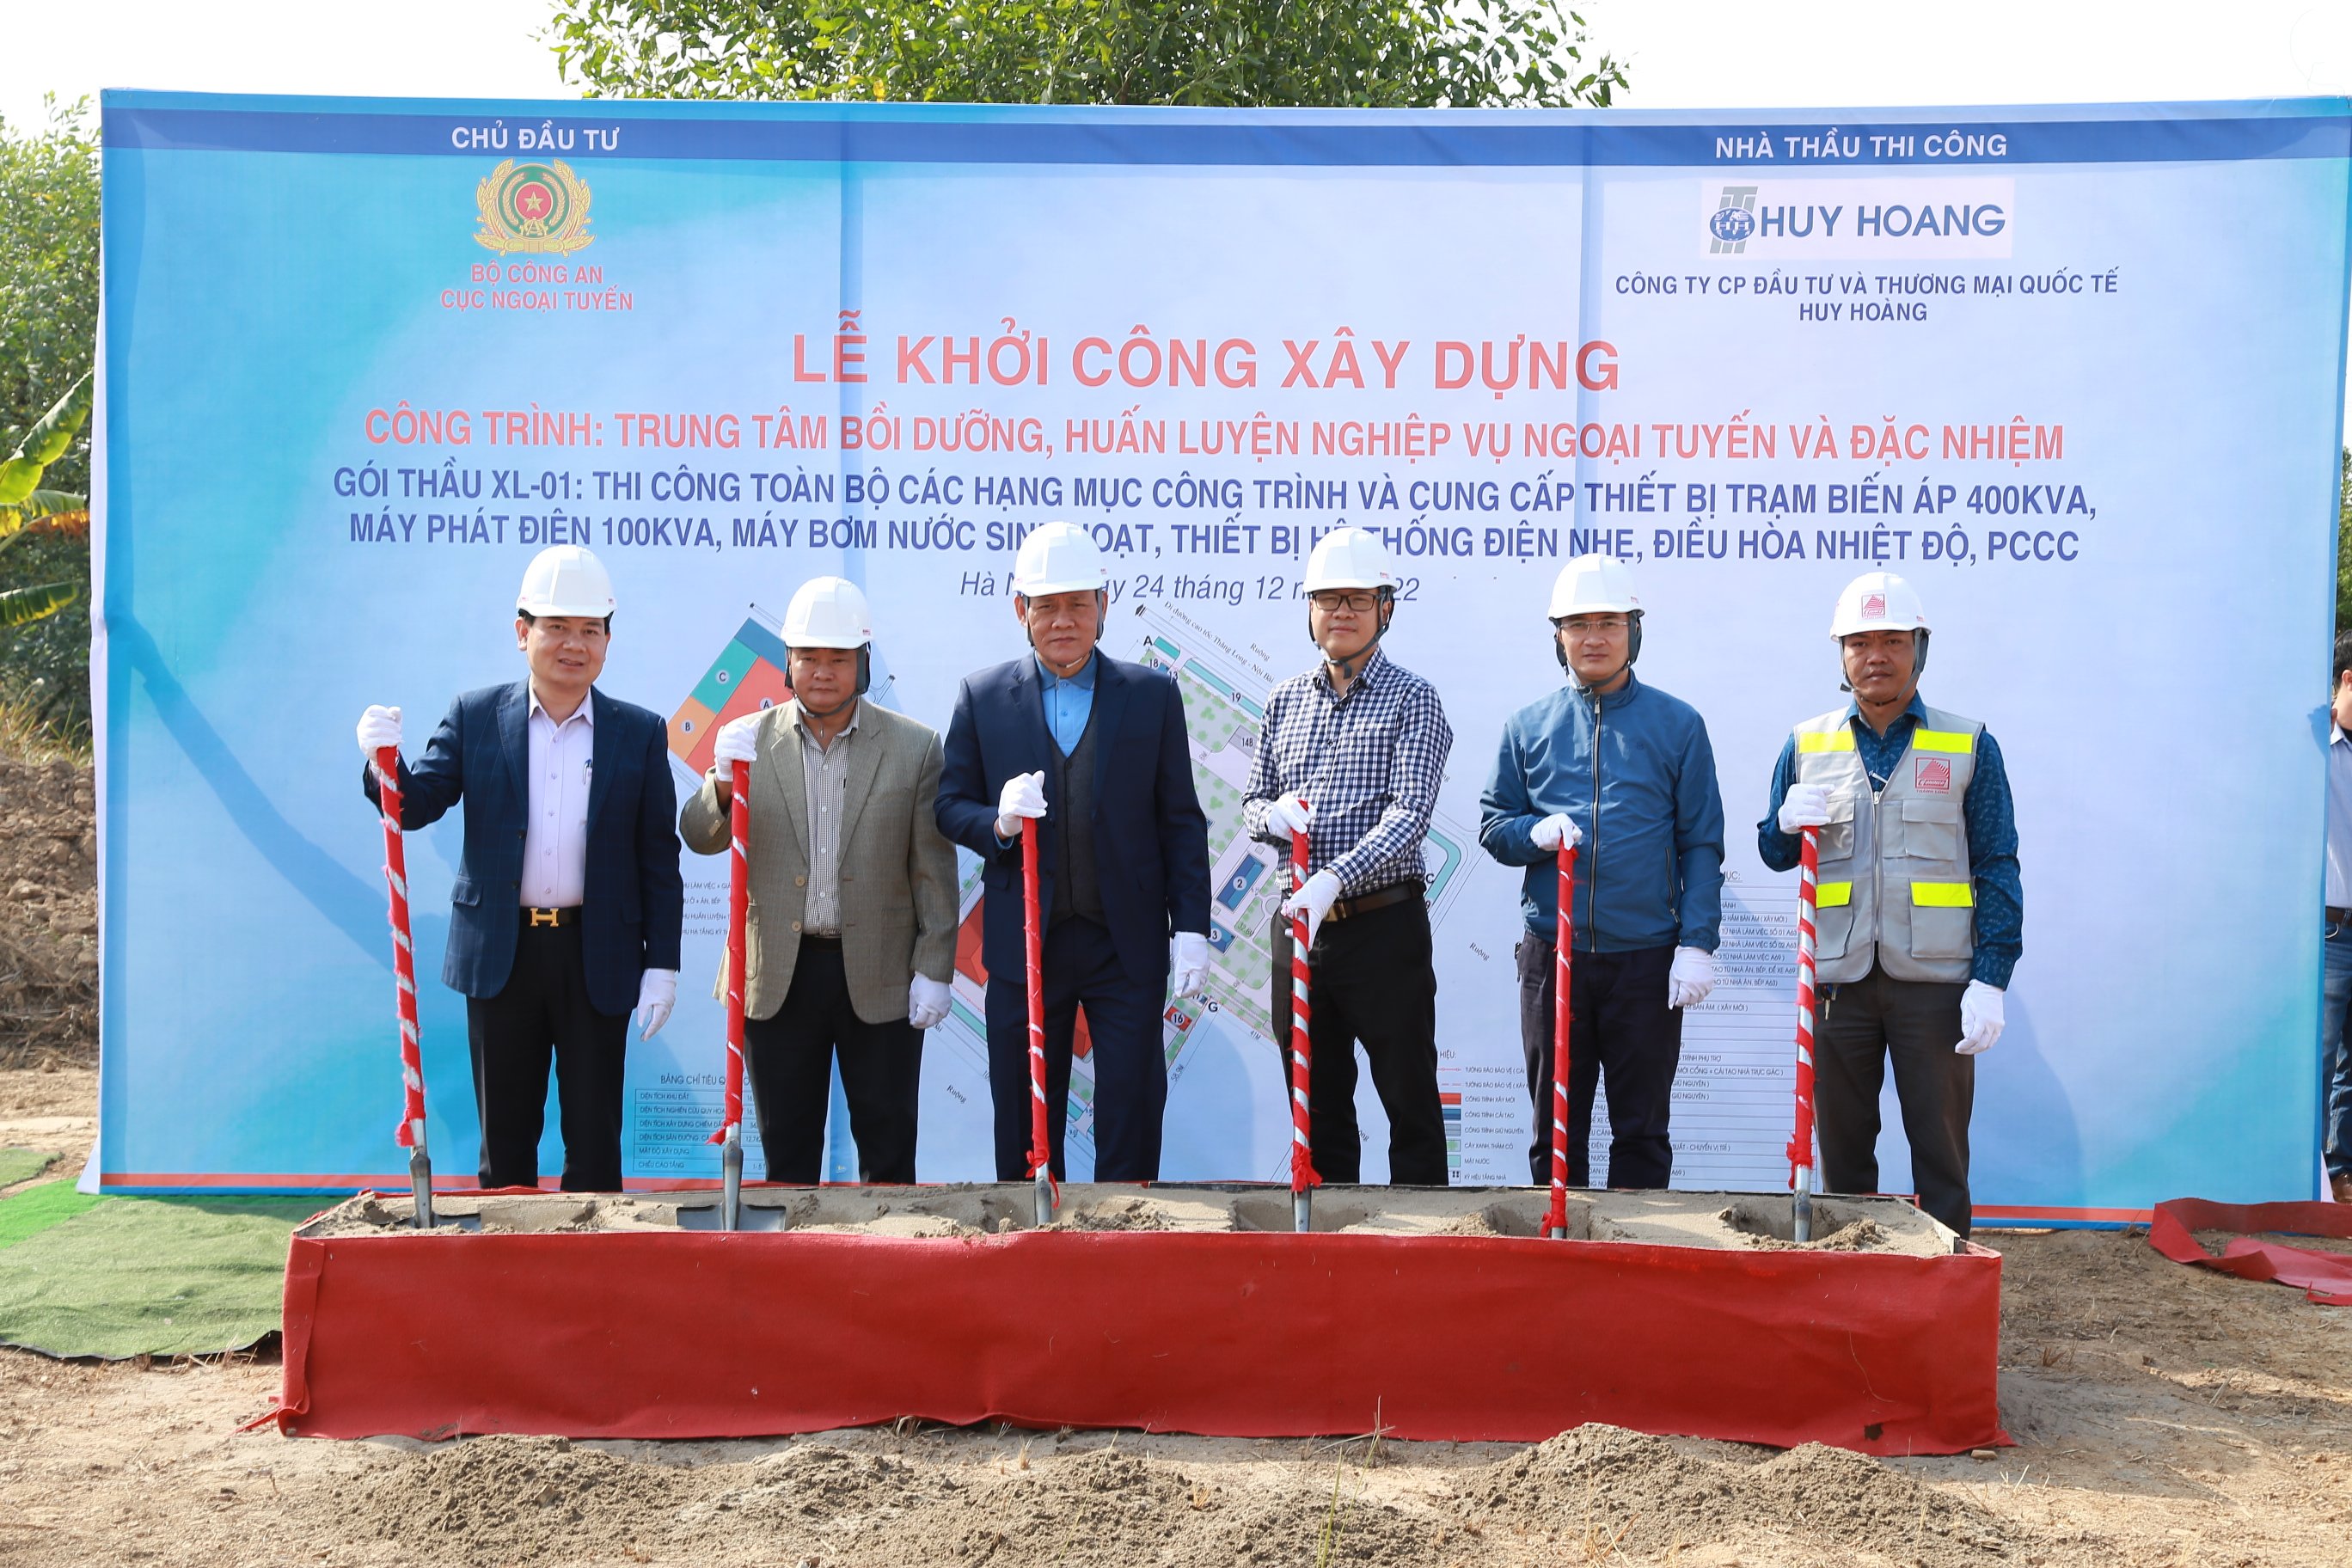 Phó Tổng Giám đốc Nguyễn Duy Bình tham dự lễ khởi công công trình “Trung tâm bồi dưỡng, huấn luyện nghiệp vụ ngoại tuyến và đặc nhiệm”